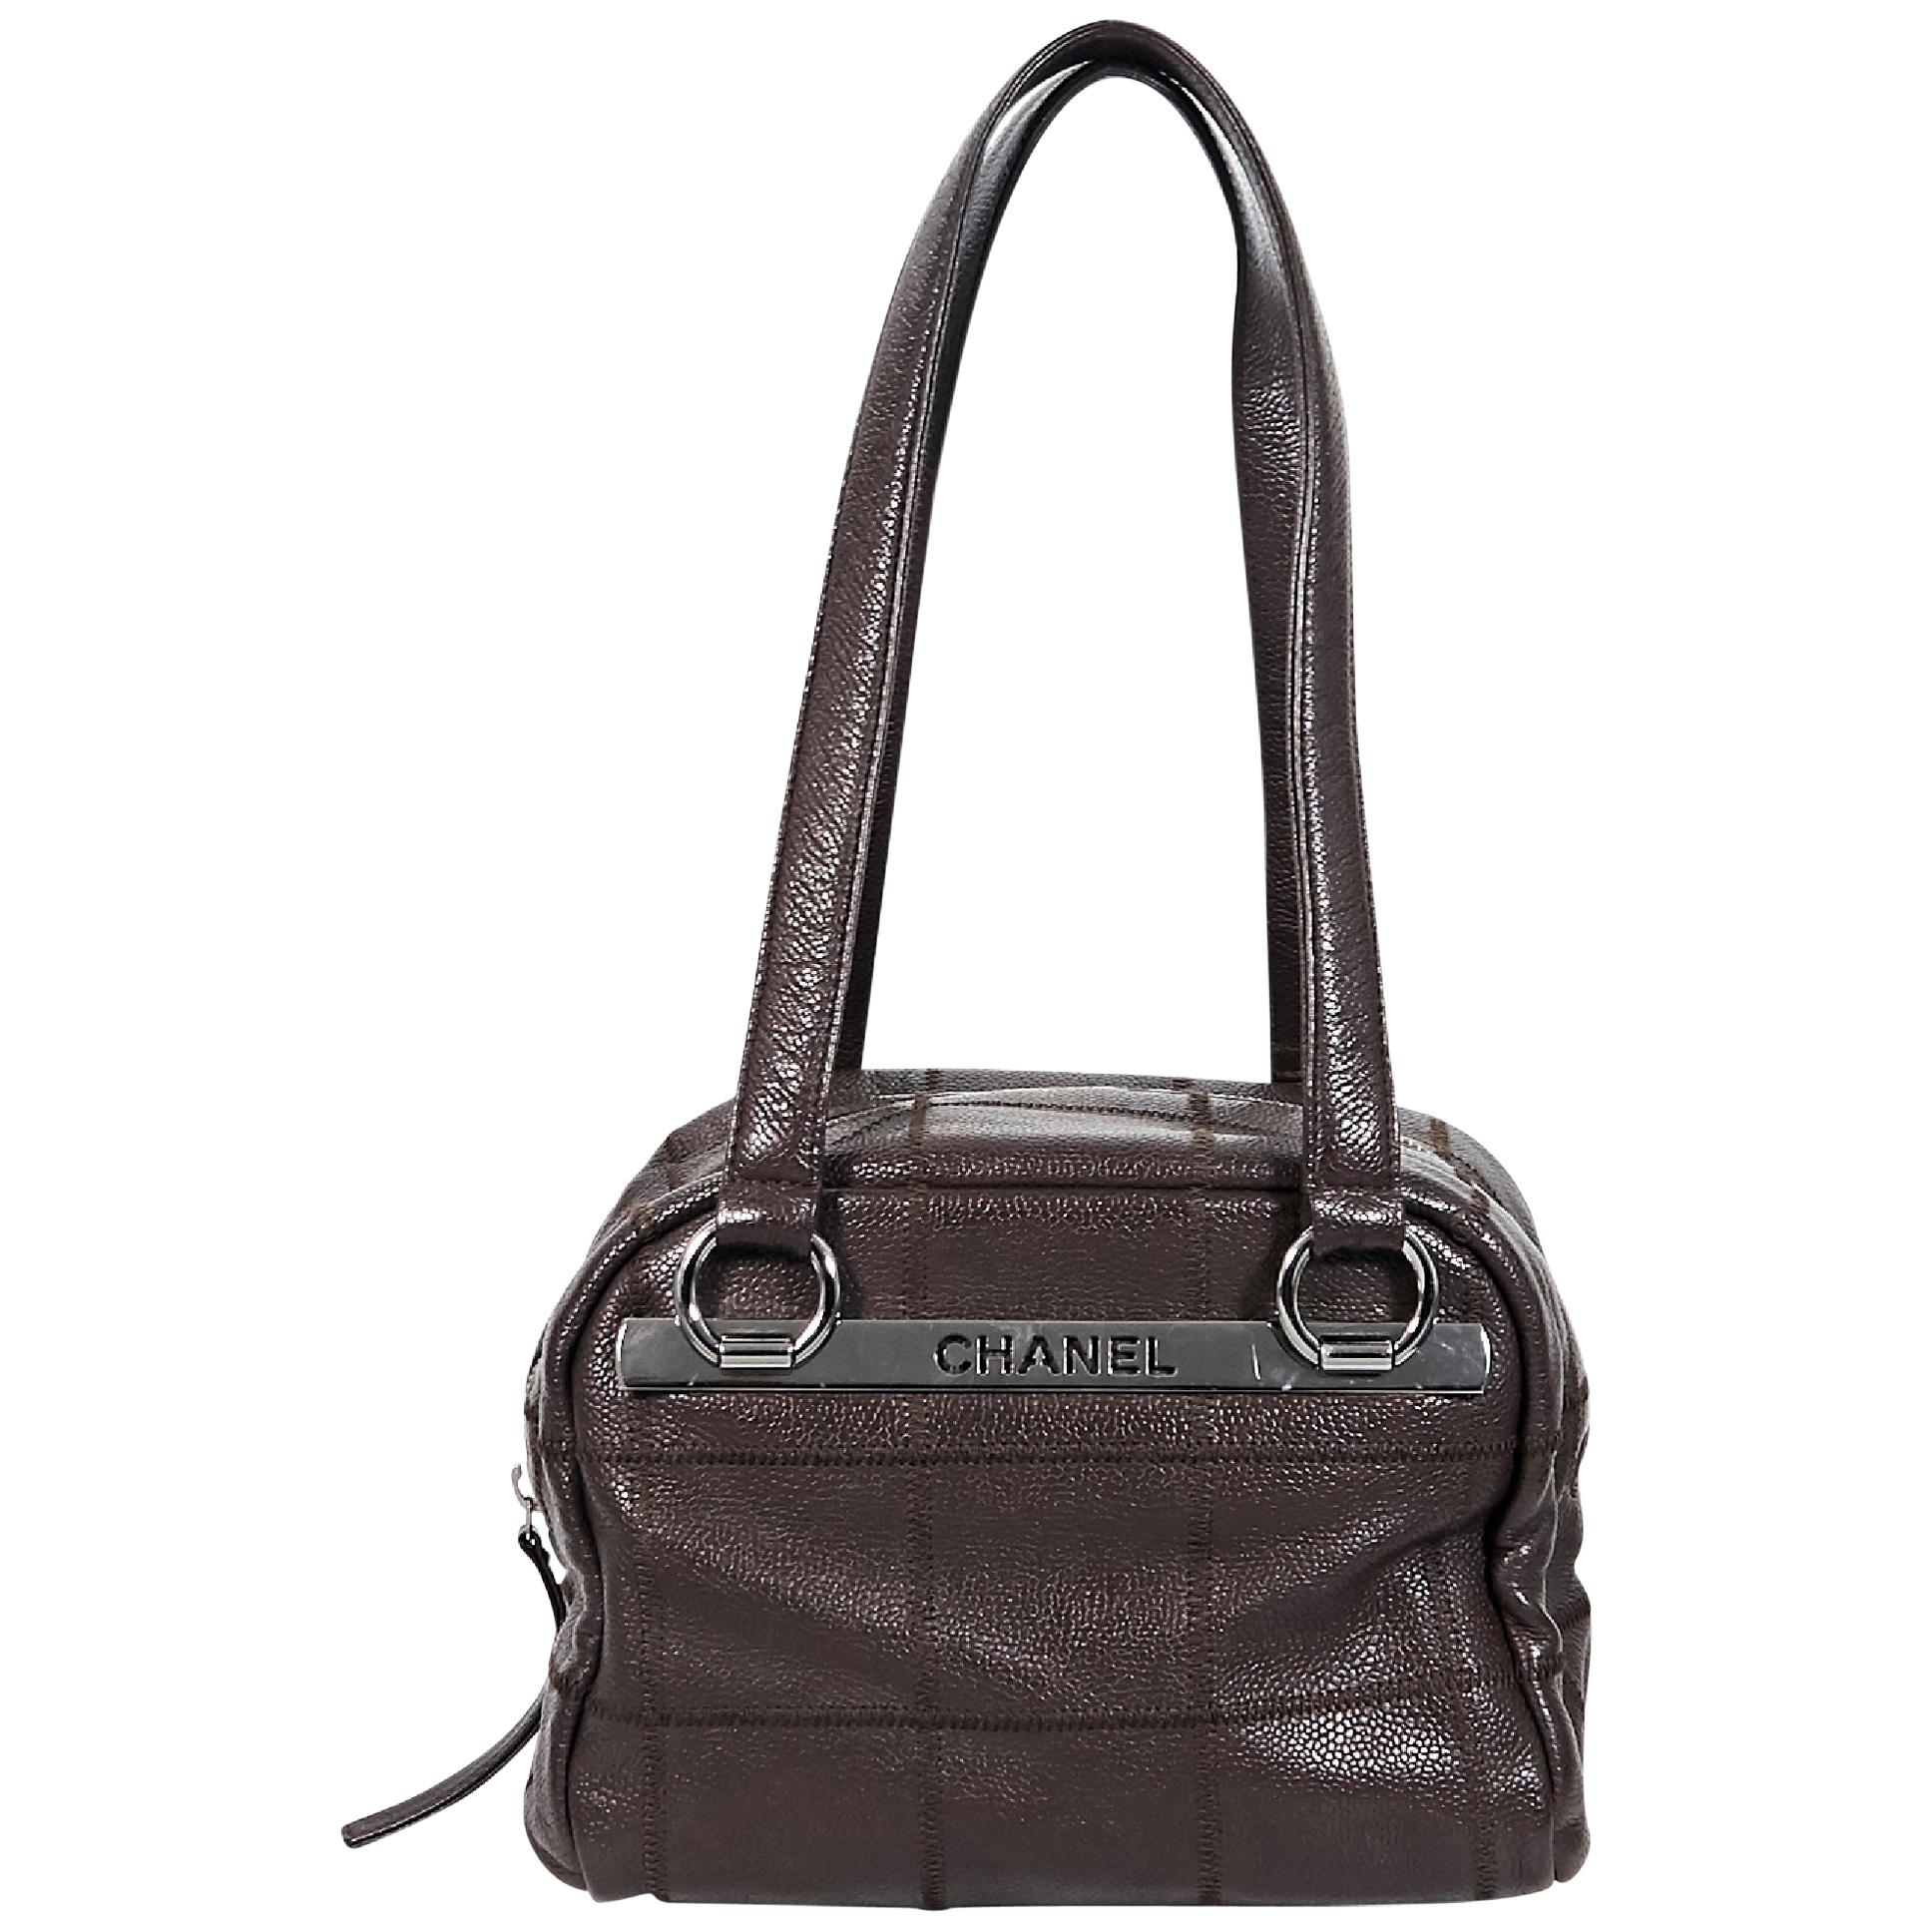 Brown Chanel Leather Shoulder Bag